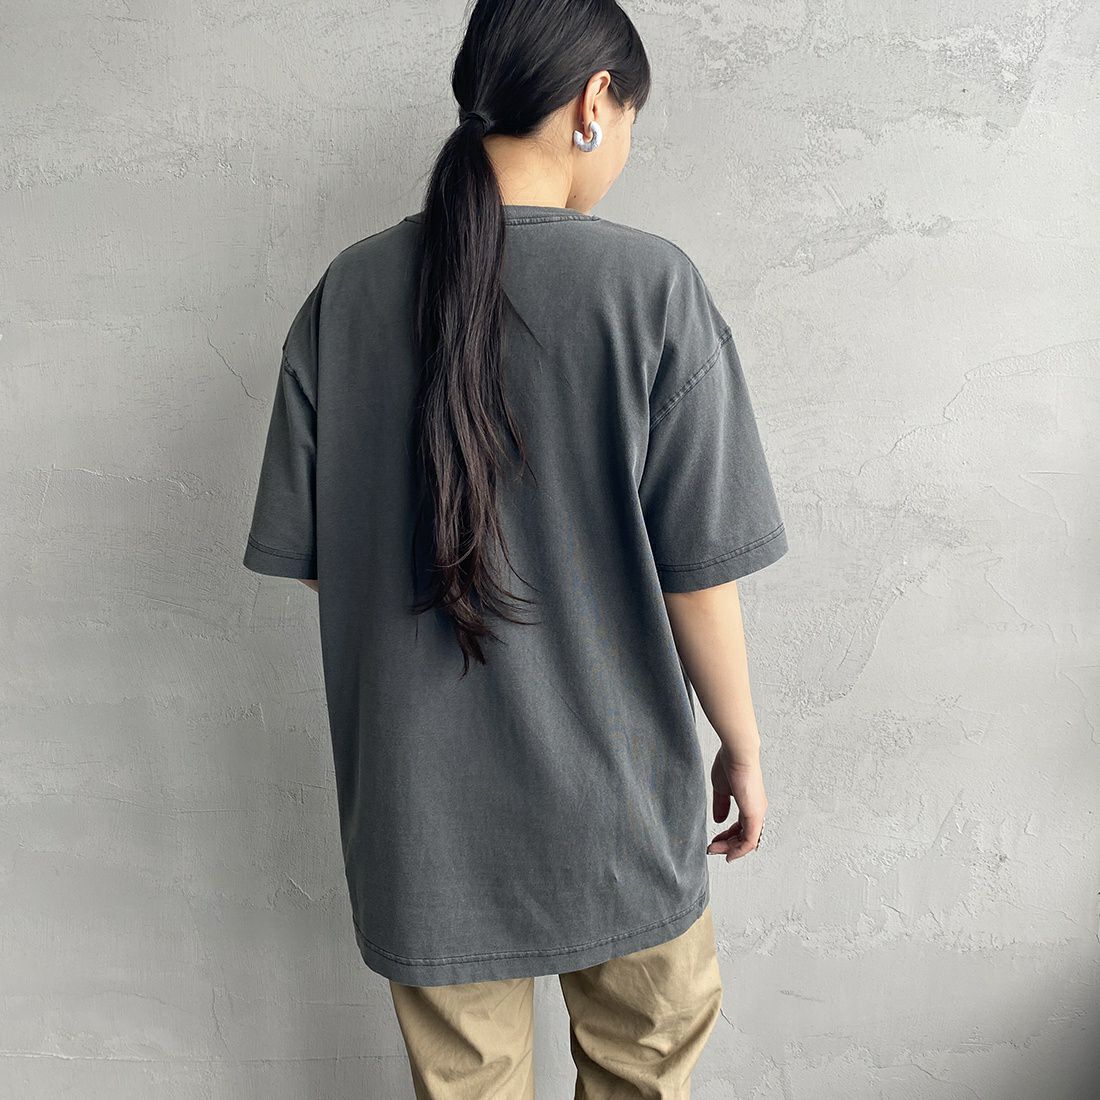 carhartt WIP [カーハートダブリューアイピー] ショートスリーブ ネルソンTシャツ [I029949] BLACK &&モデル身長：156cm 着用サイズ：S&&